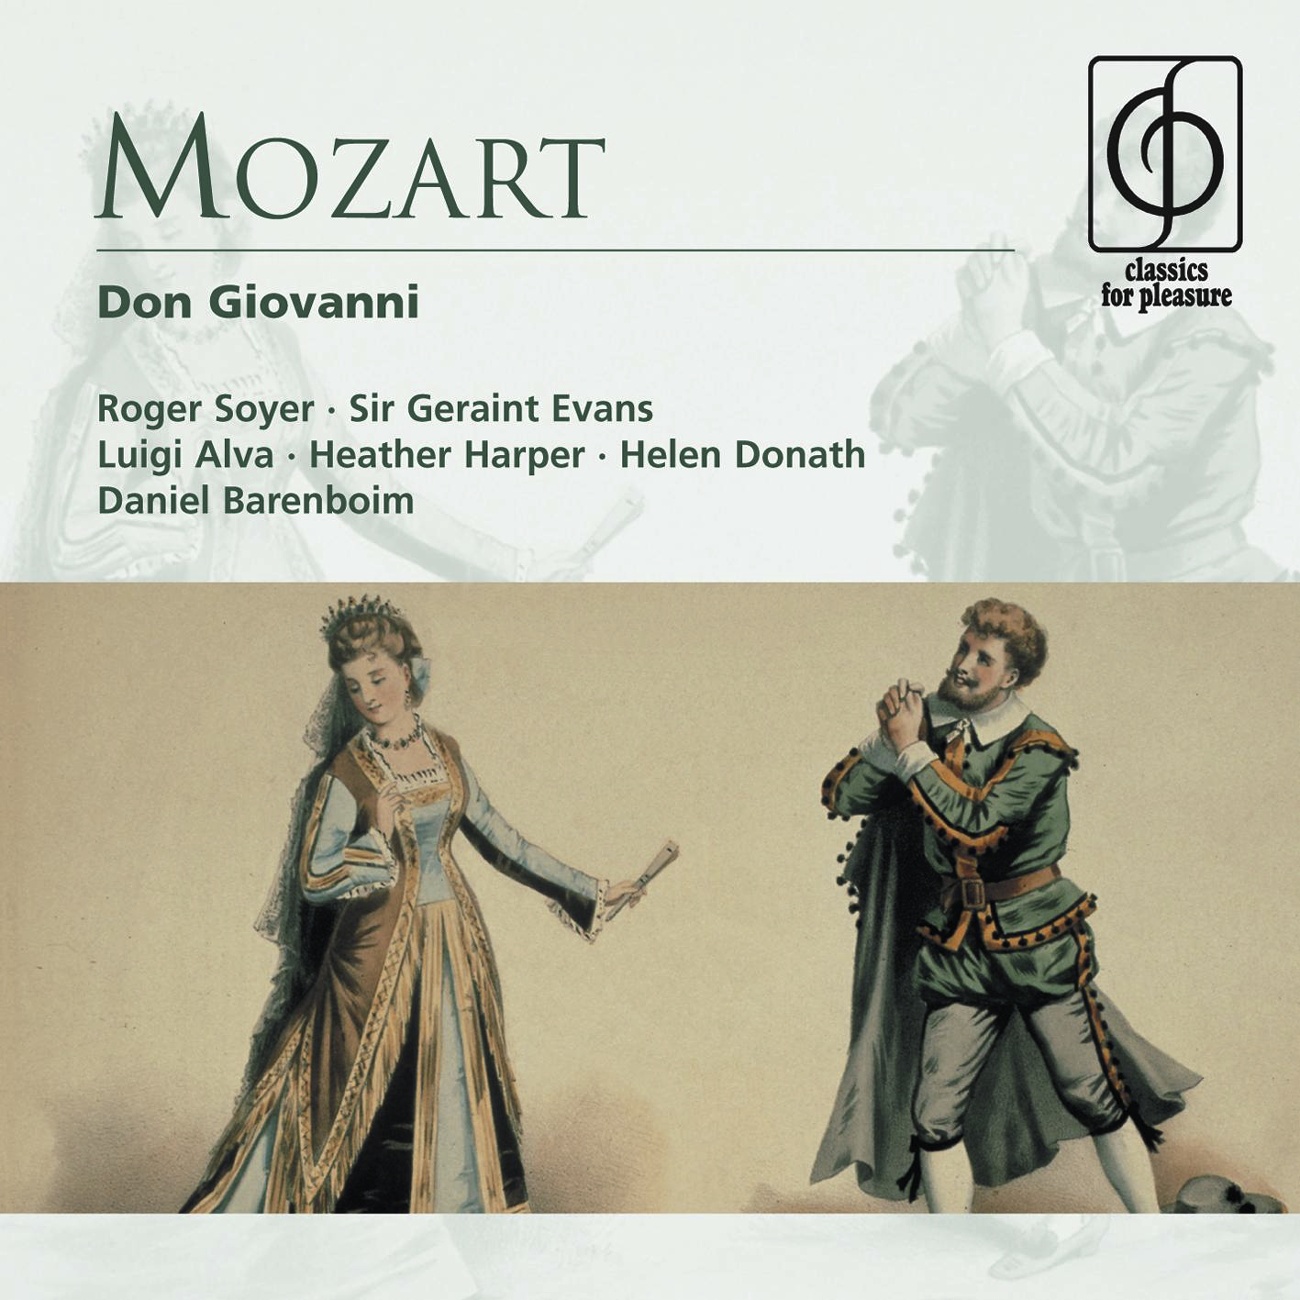 Don Giovanni - Opera in two acts K527 (1991 Digital Remaster), Act II, Scena seconda: Il mio tesoro intanto (Don Ottavio)